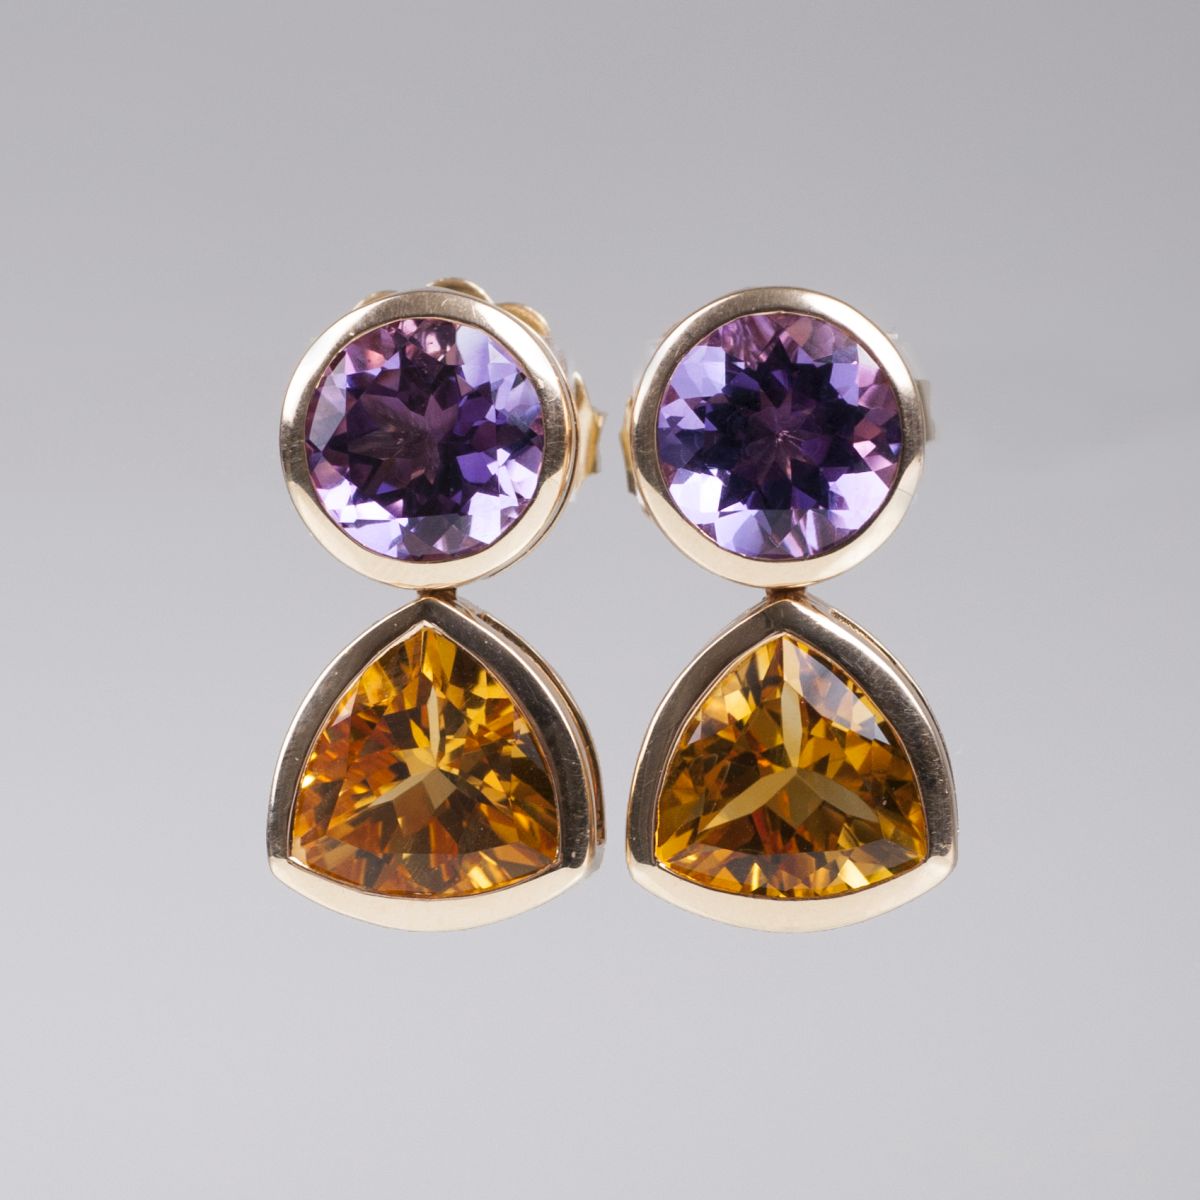 A pair of amethyst citrine earrings